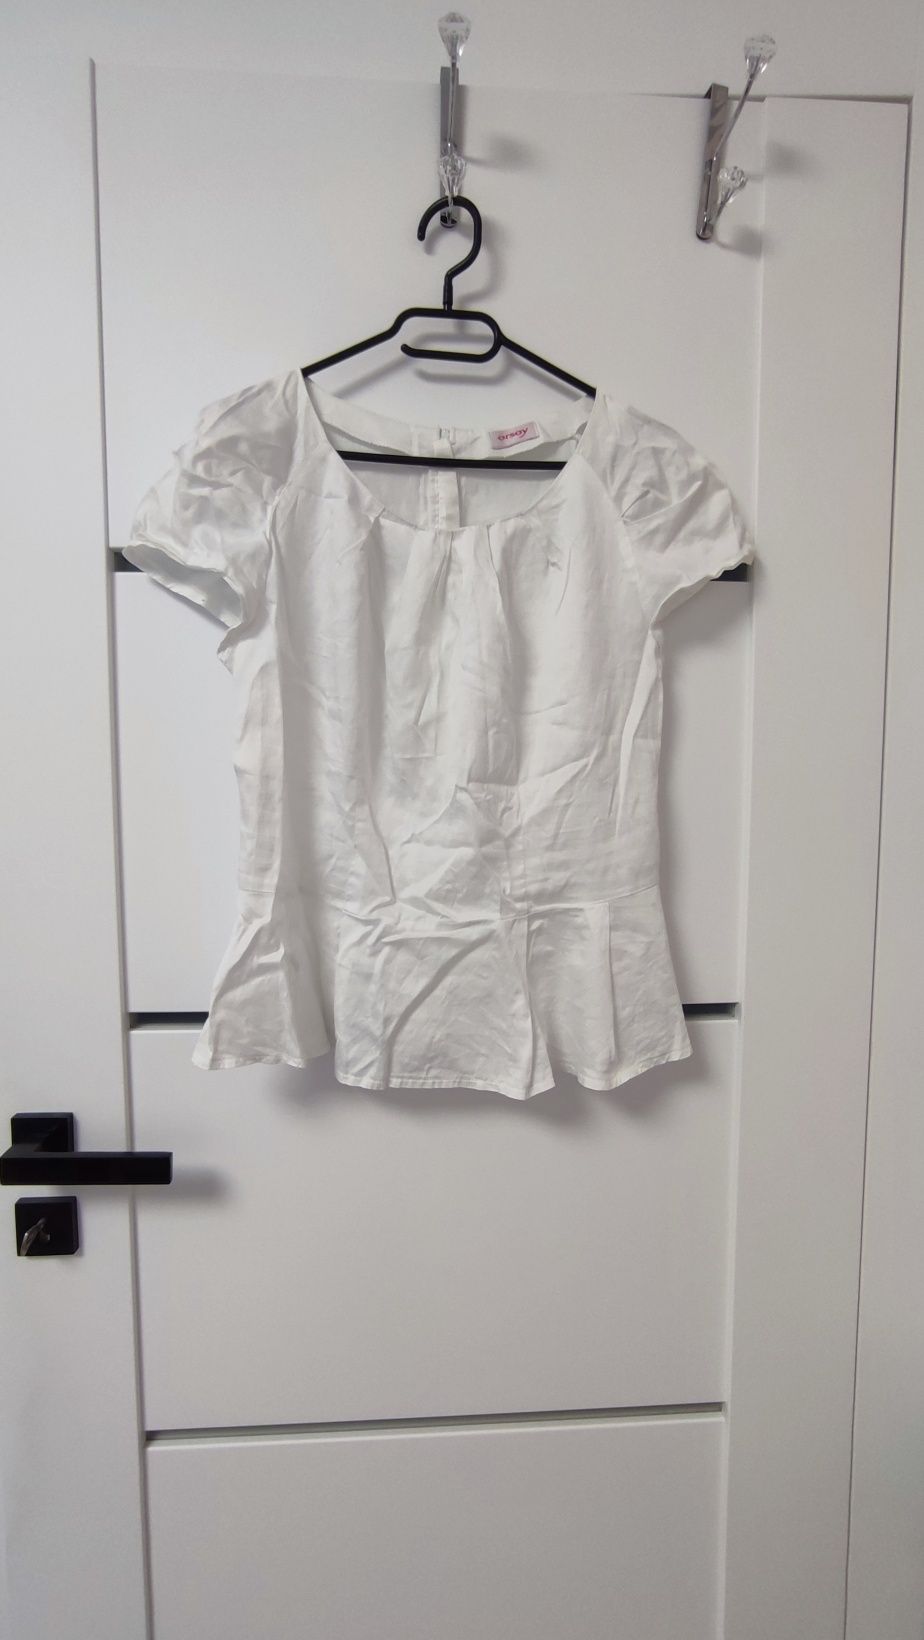 Płócienna biała bluzka rozmiar 40